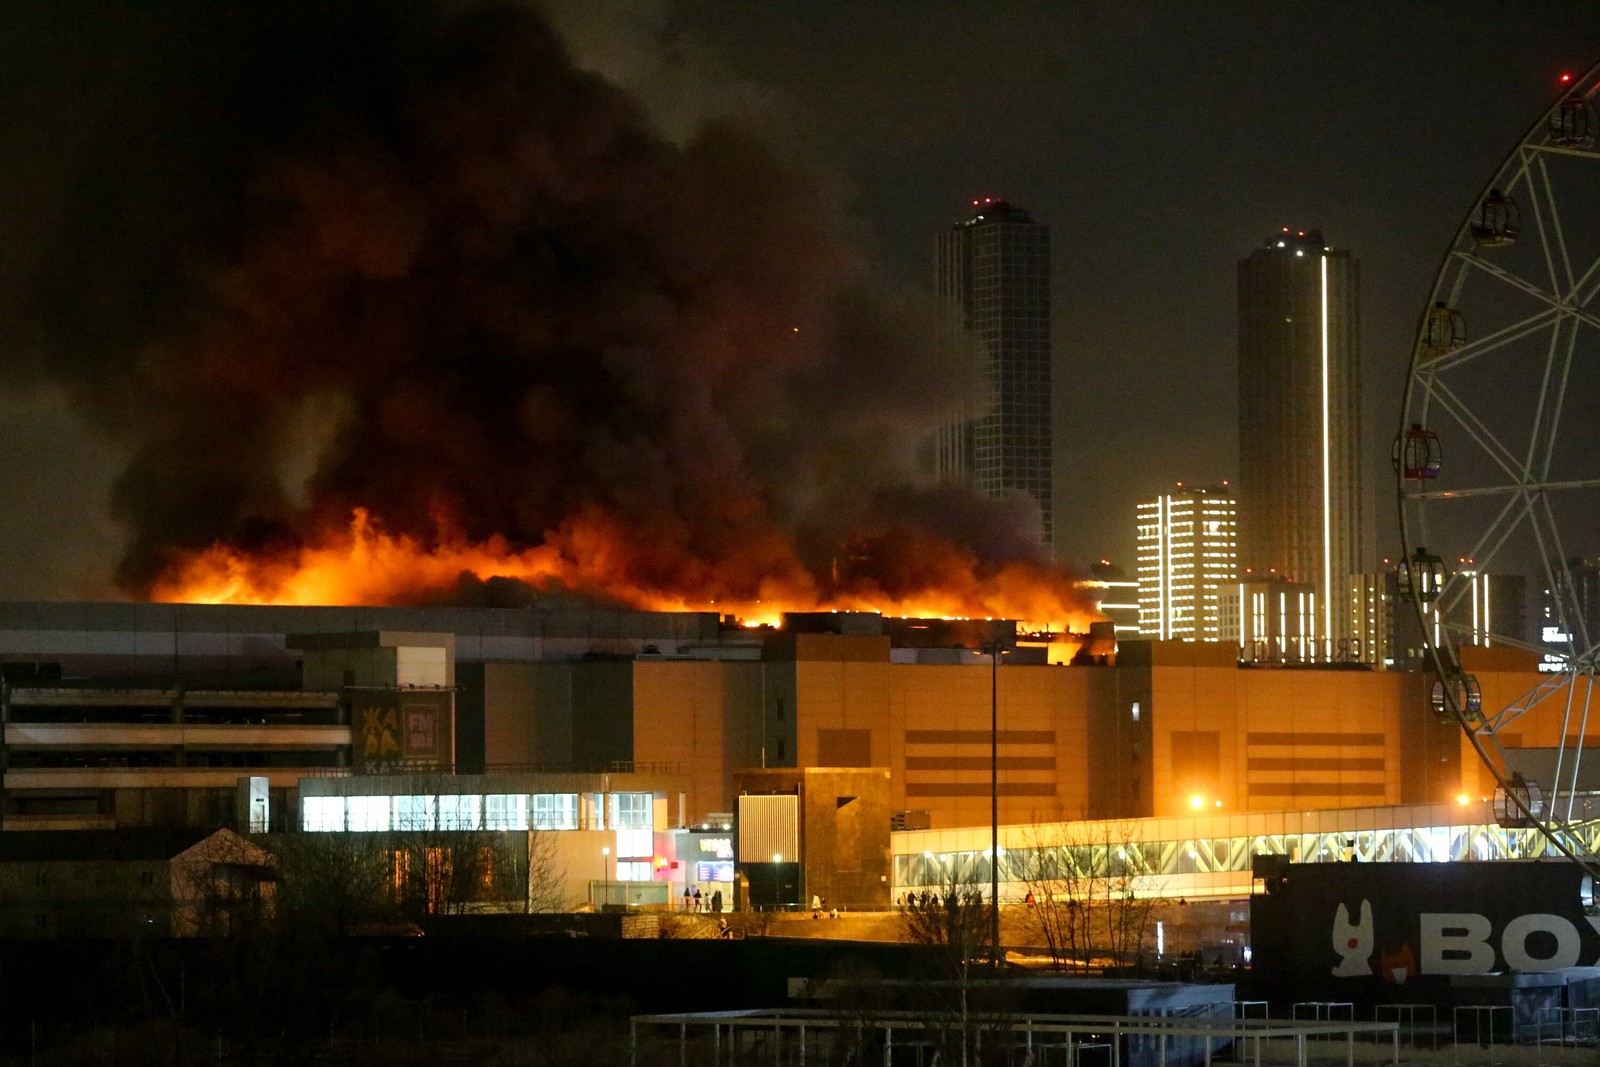 Sala de concertos em chamas no Crocus City Hall — Foto: Sergei VEDYASHKIN / Moskva News Agency / AFP